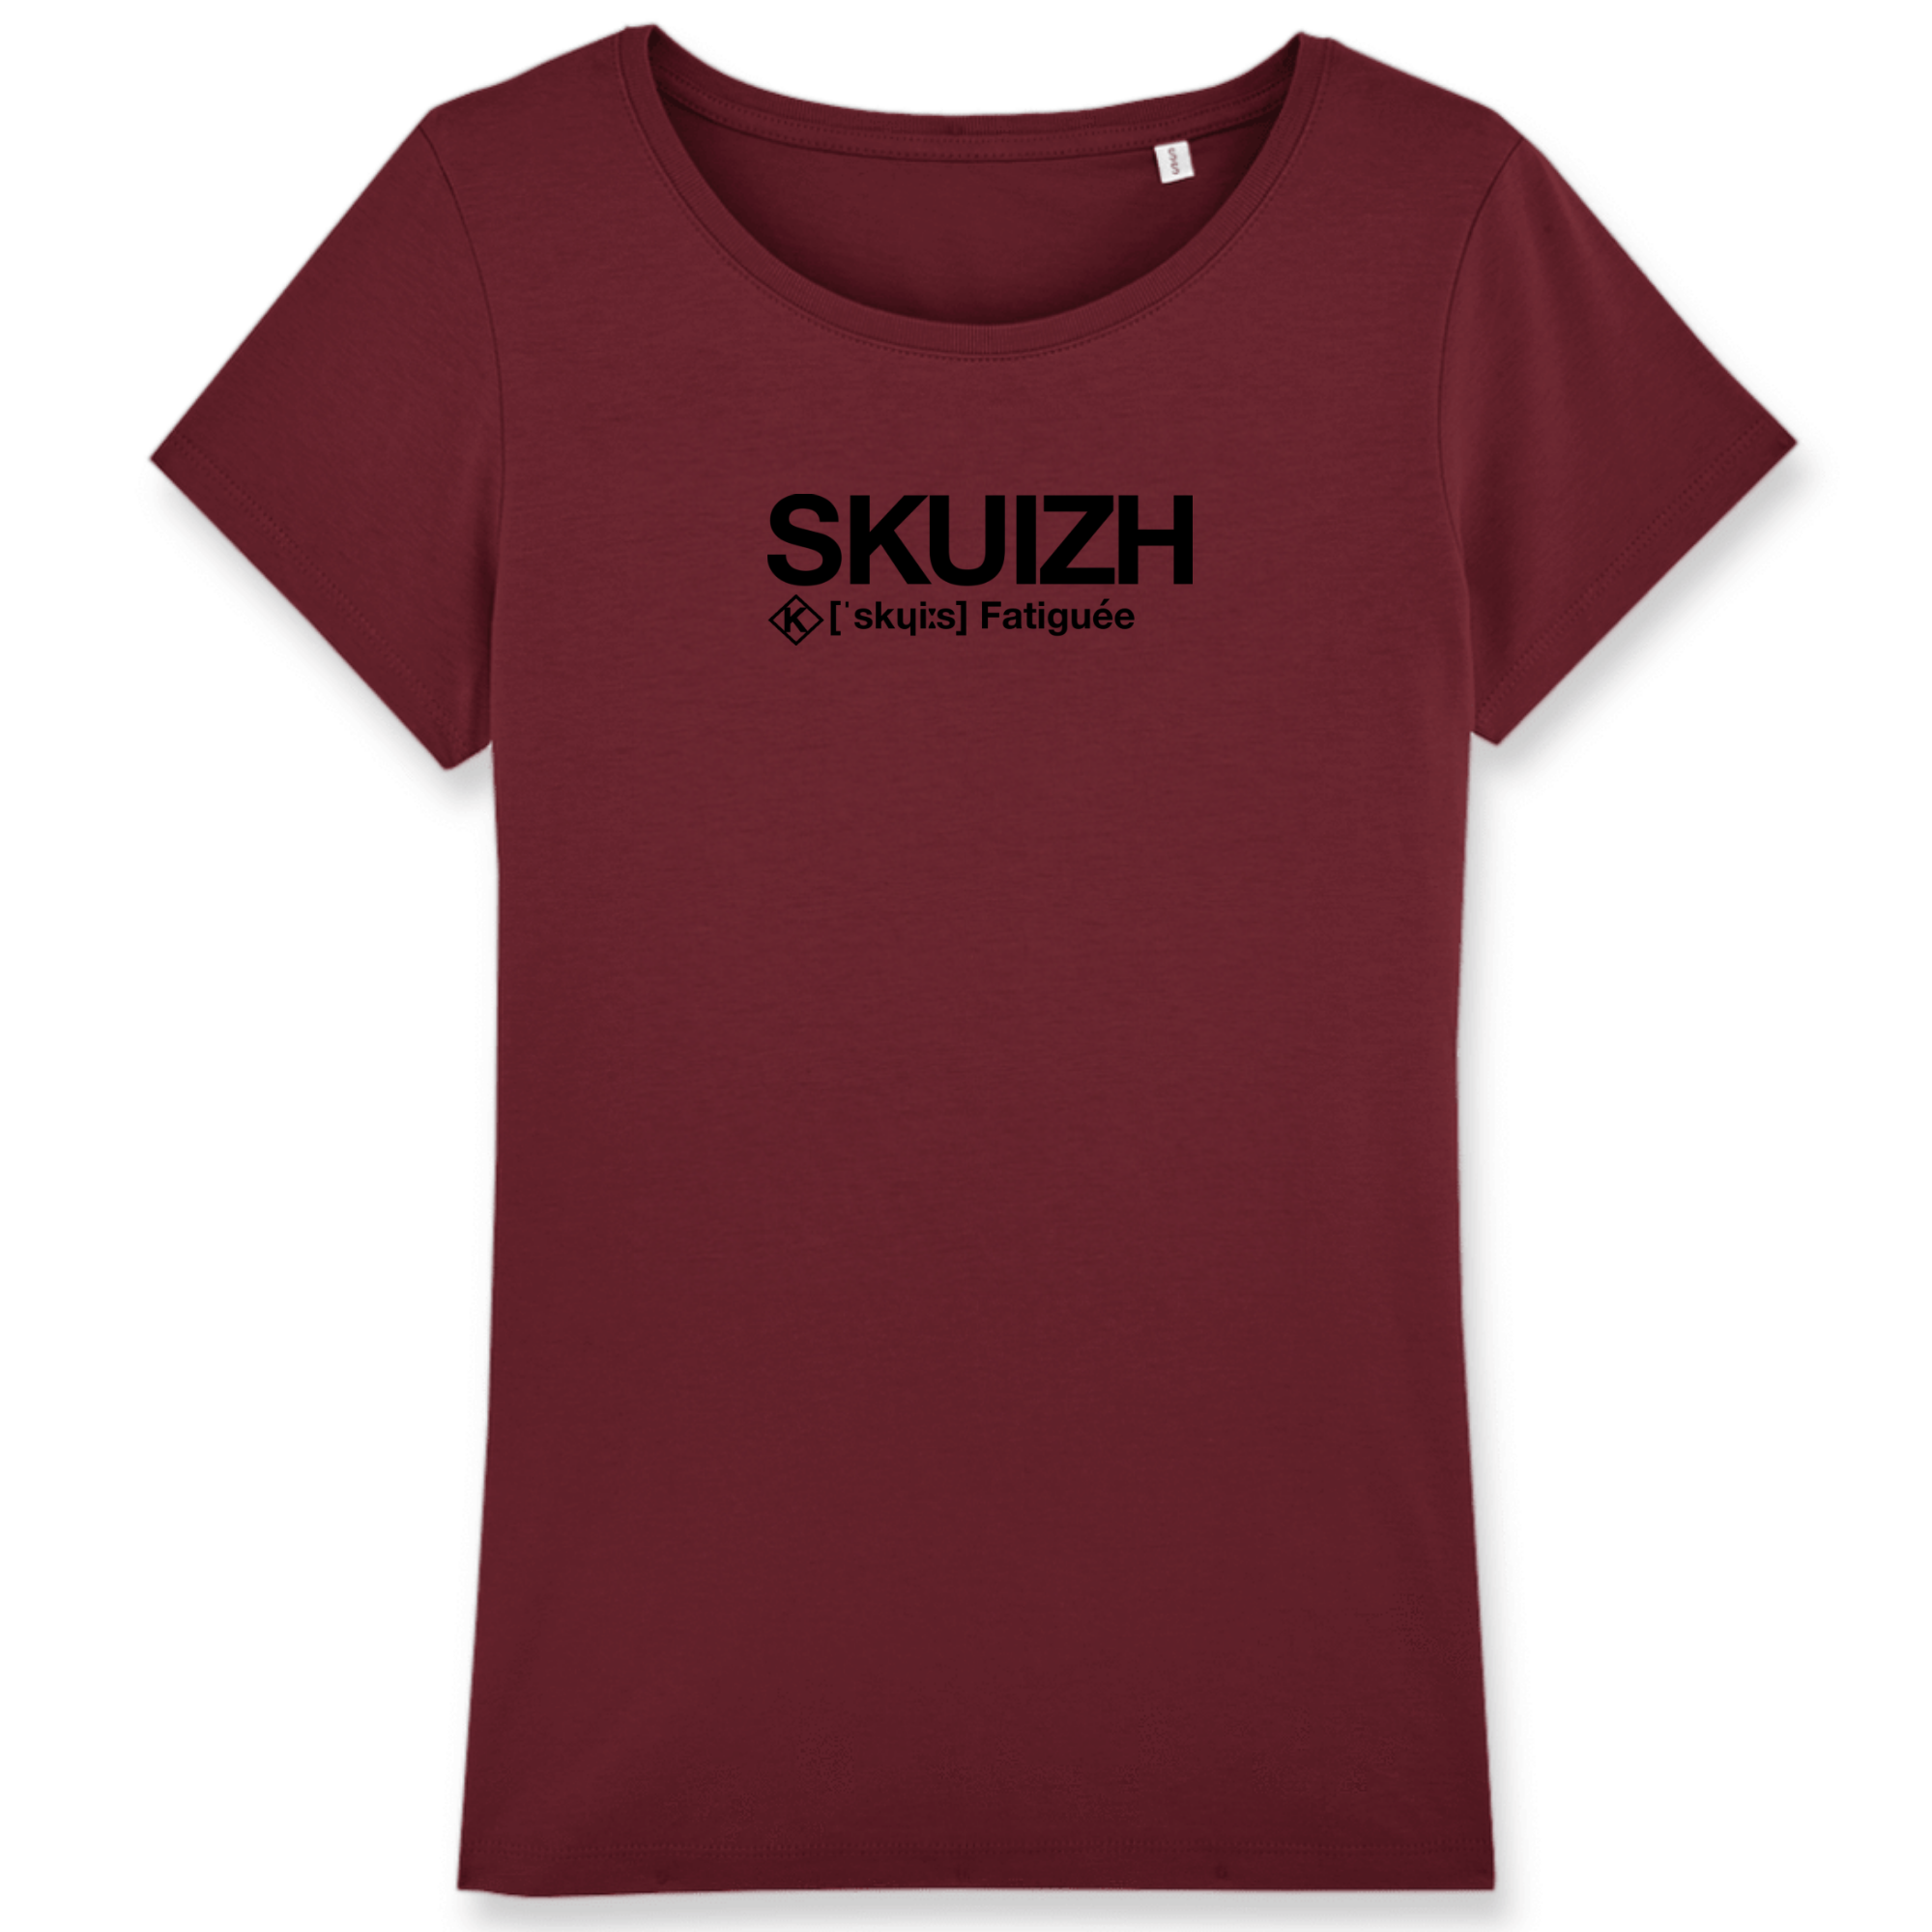 Skuizh T-shirt (Fatiguée)